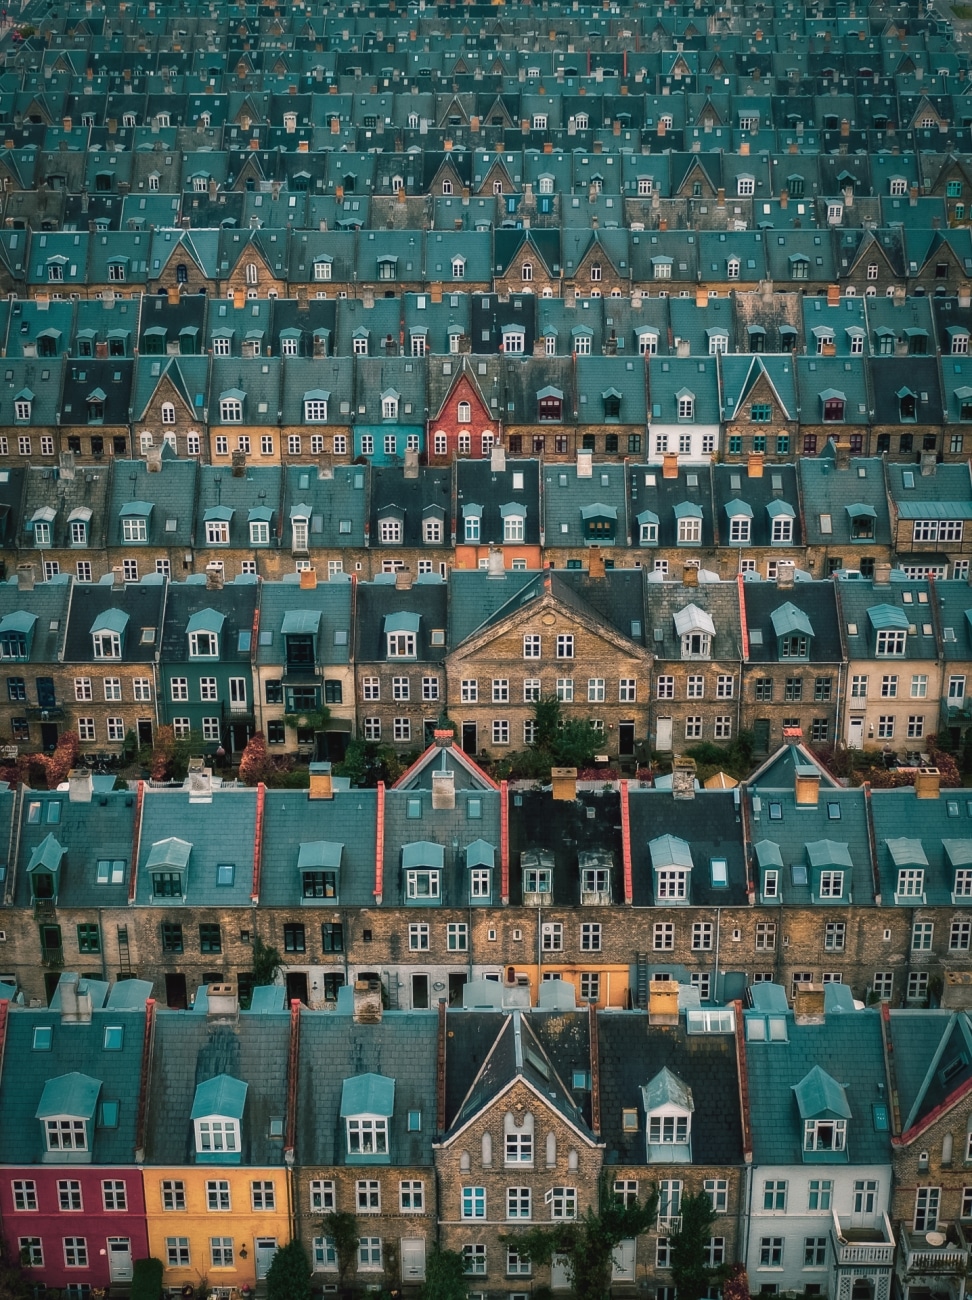 Tejados del barrio Kartoffelraekkerne, en Oesterbro, Copenhague. El barrio fue construido a finales de 1800 para las familias de clase trabajadora. Hoy en día, es uno de los más deseados de la capital danesas.